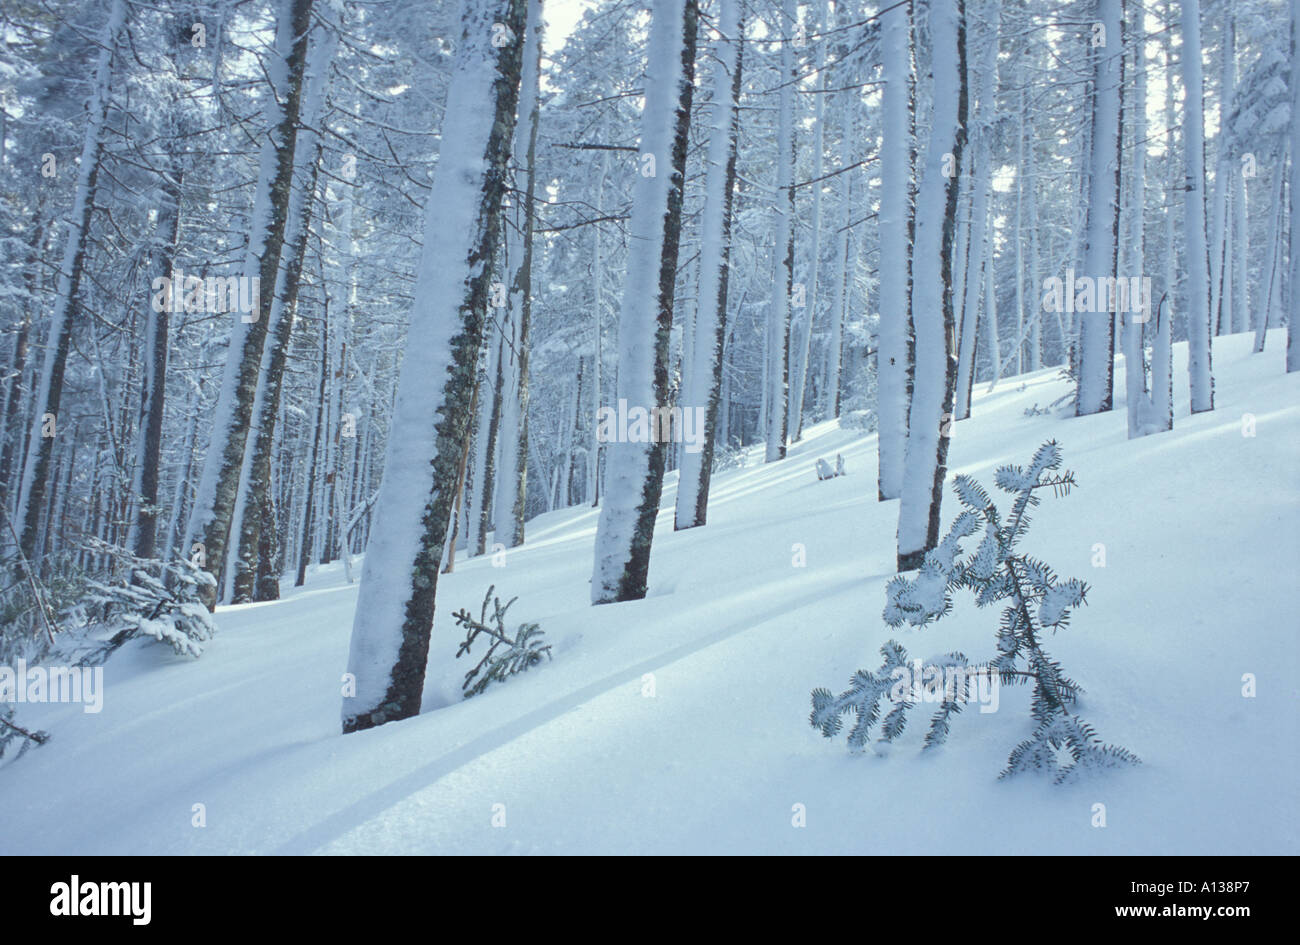 Une scène près de la forêt d'hiver Tuckerman Ravine sur le mont Washington au New Hampshire s Montagnes Blanches Montagnes Blanches NH Banque D'Images